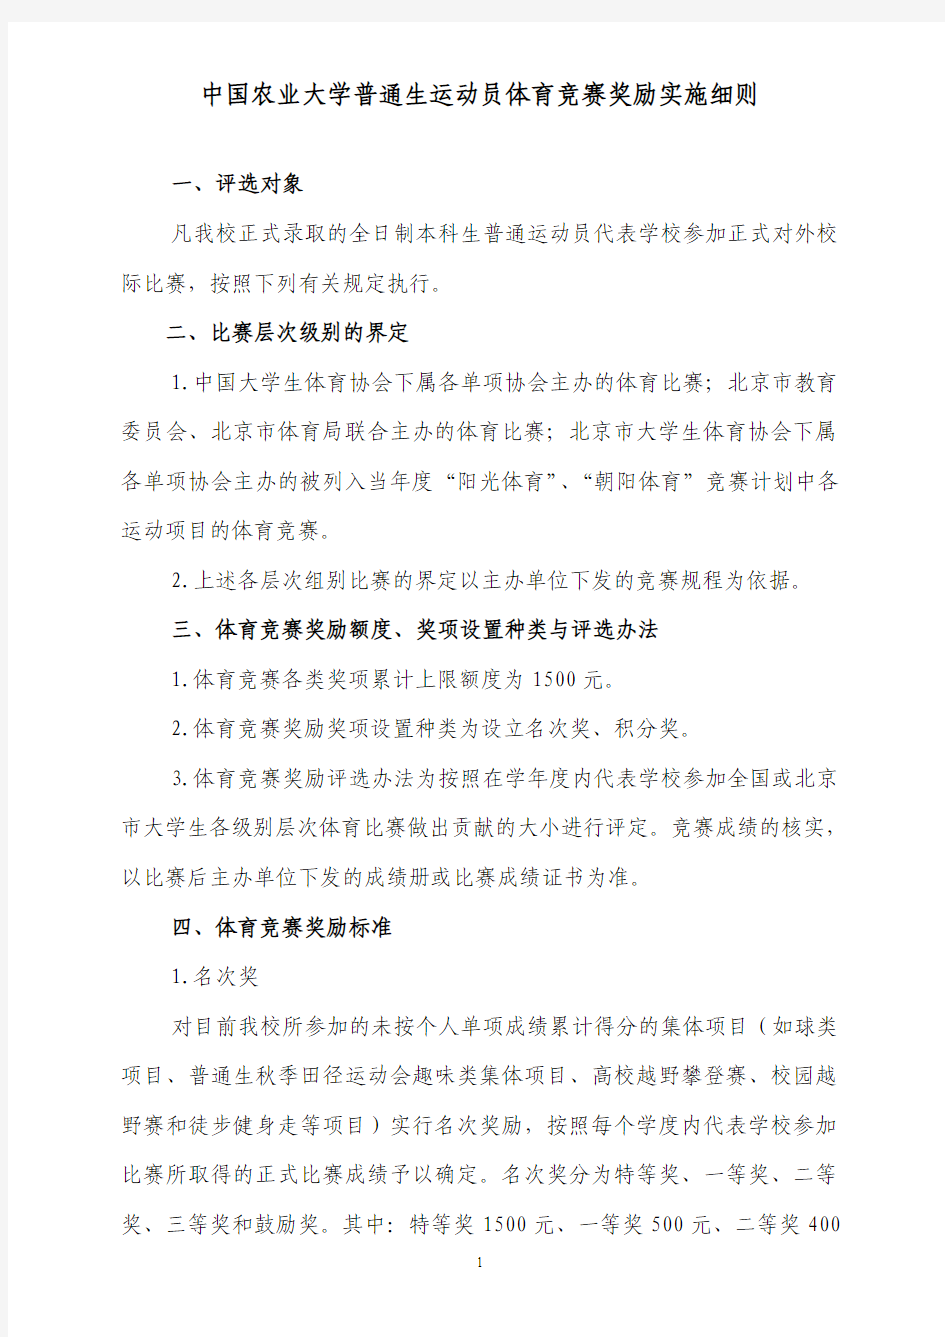 中国农业大学普通生运动员体育竞赛奖励实施细则